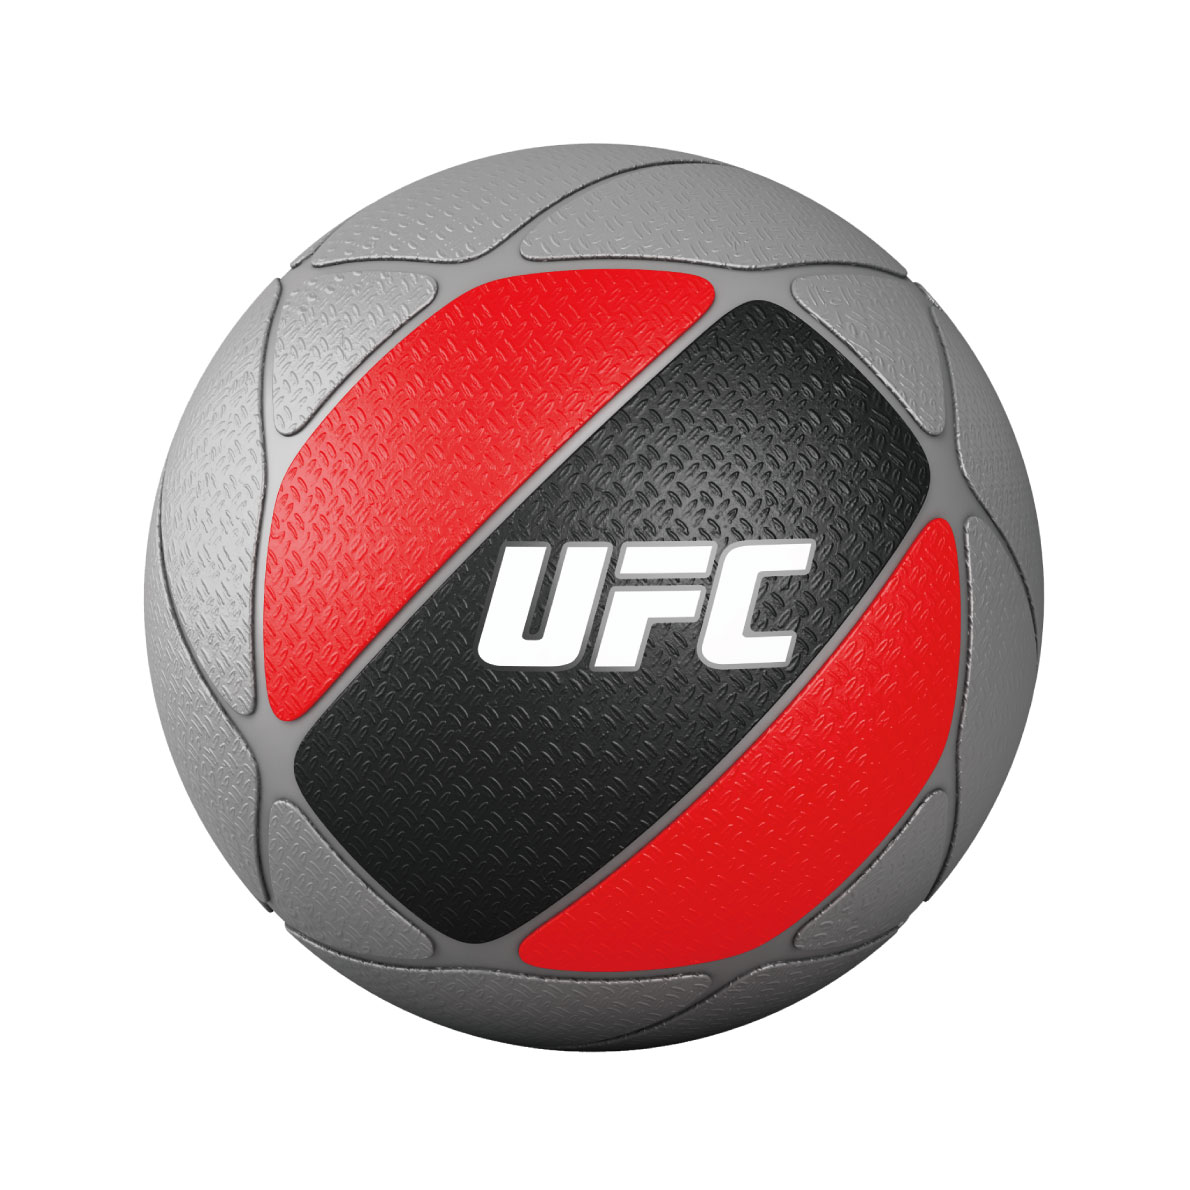 メディシンボール／ウエイトボール5個セット（2kg-10kg）〈業務用〉《総合格闘技UFCオフィシャル》